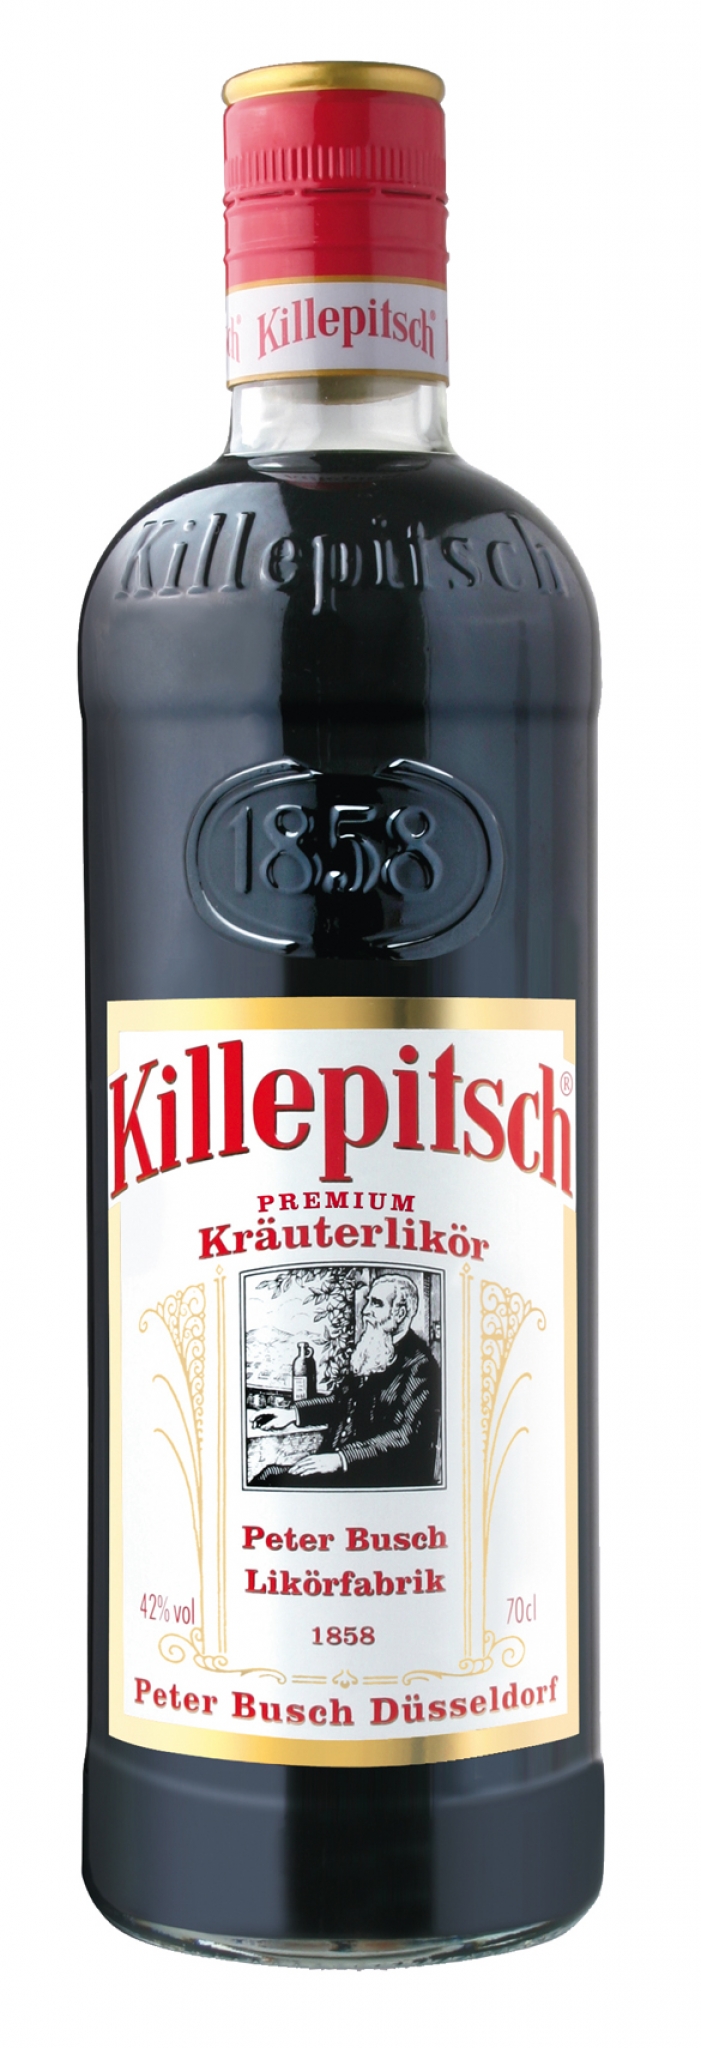 Killepitsch-07-Liter.jpg